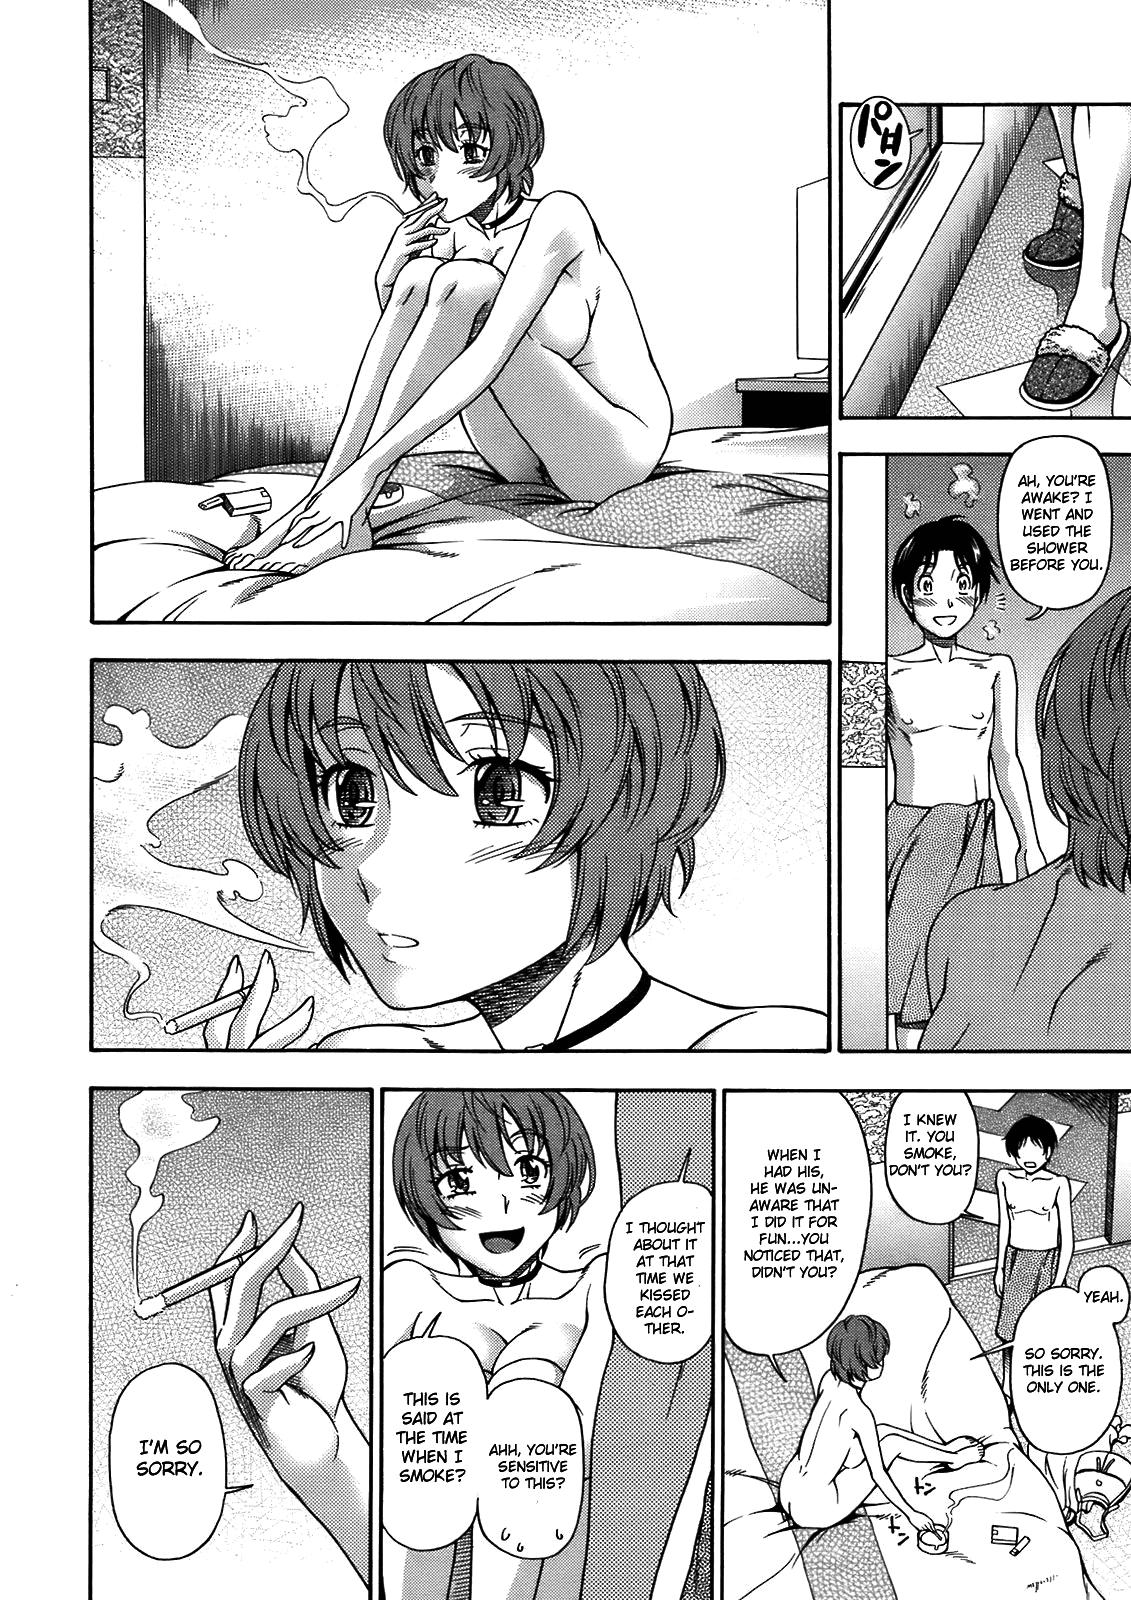 Bitch Sakura Chiru Saku Puba - Page 16